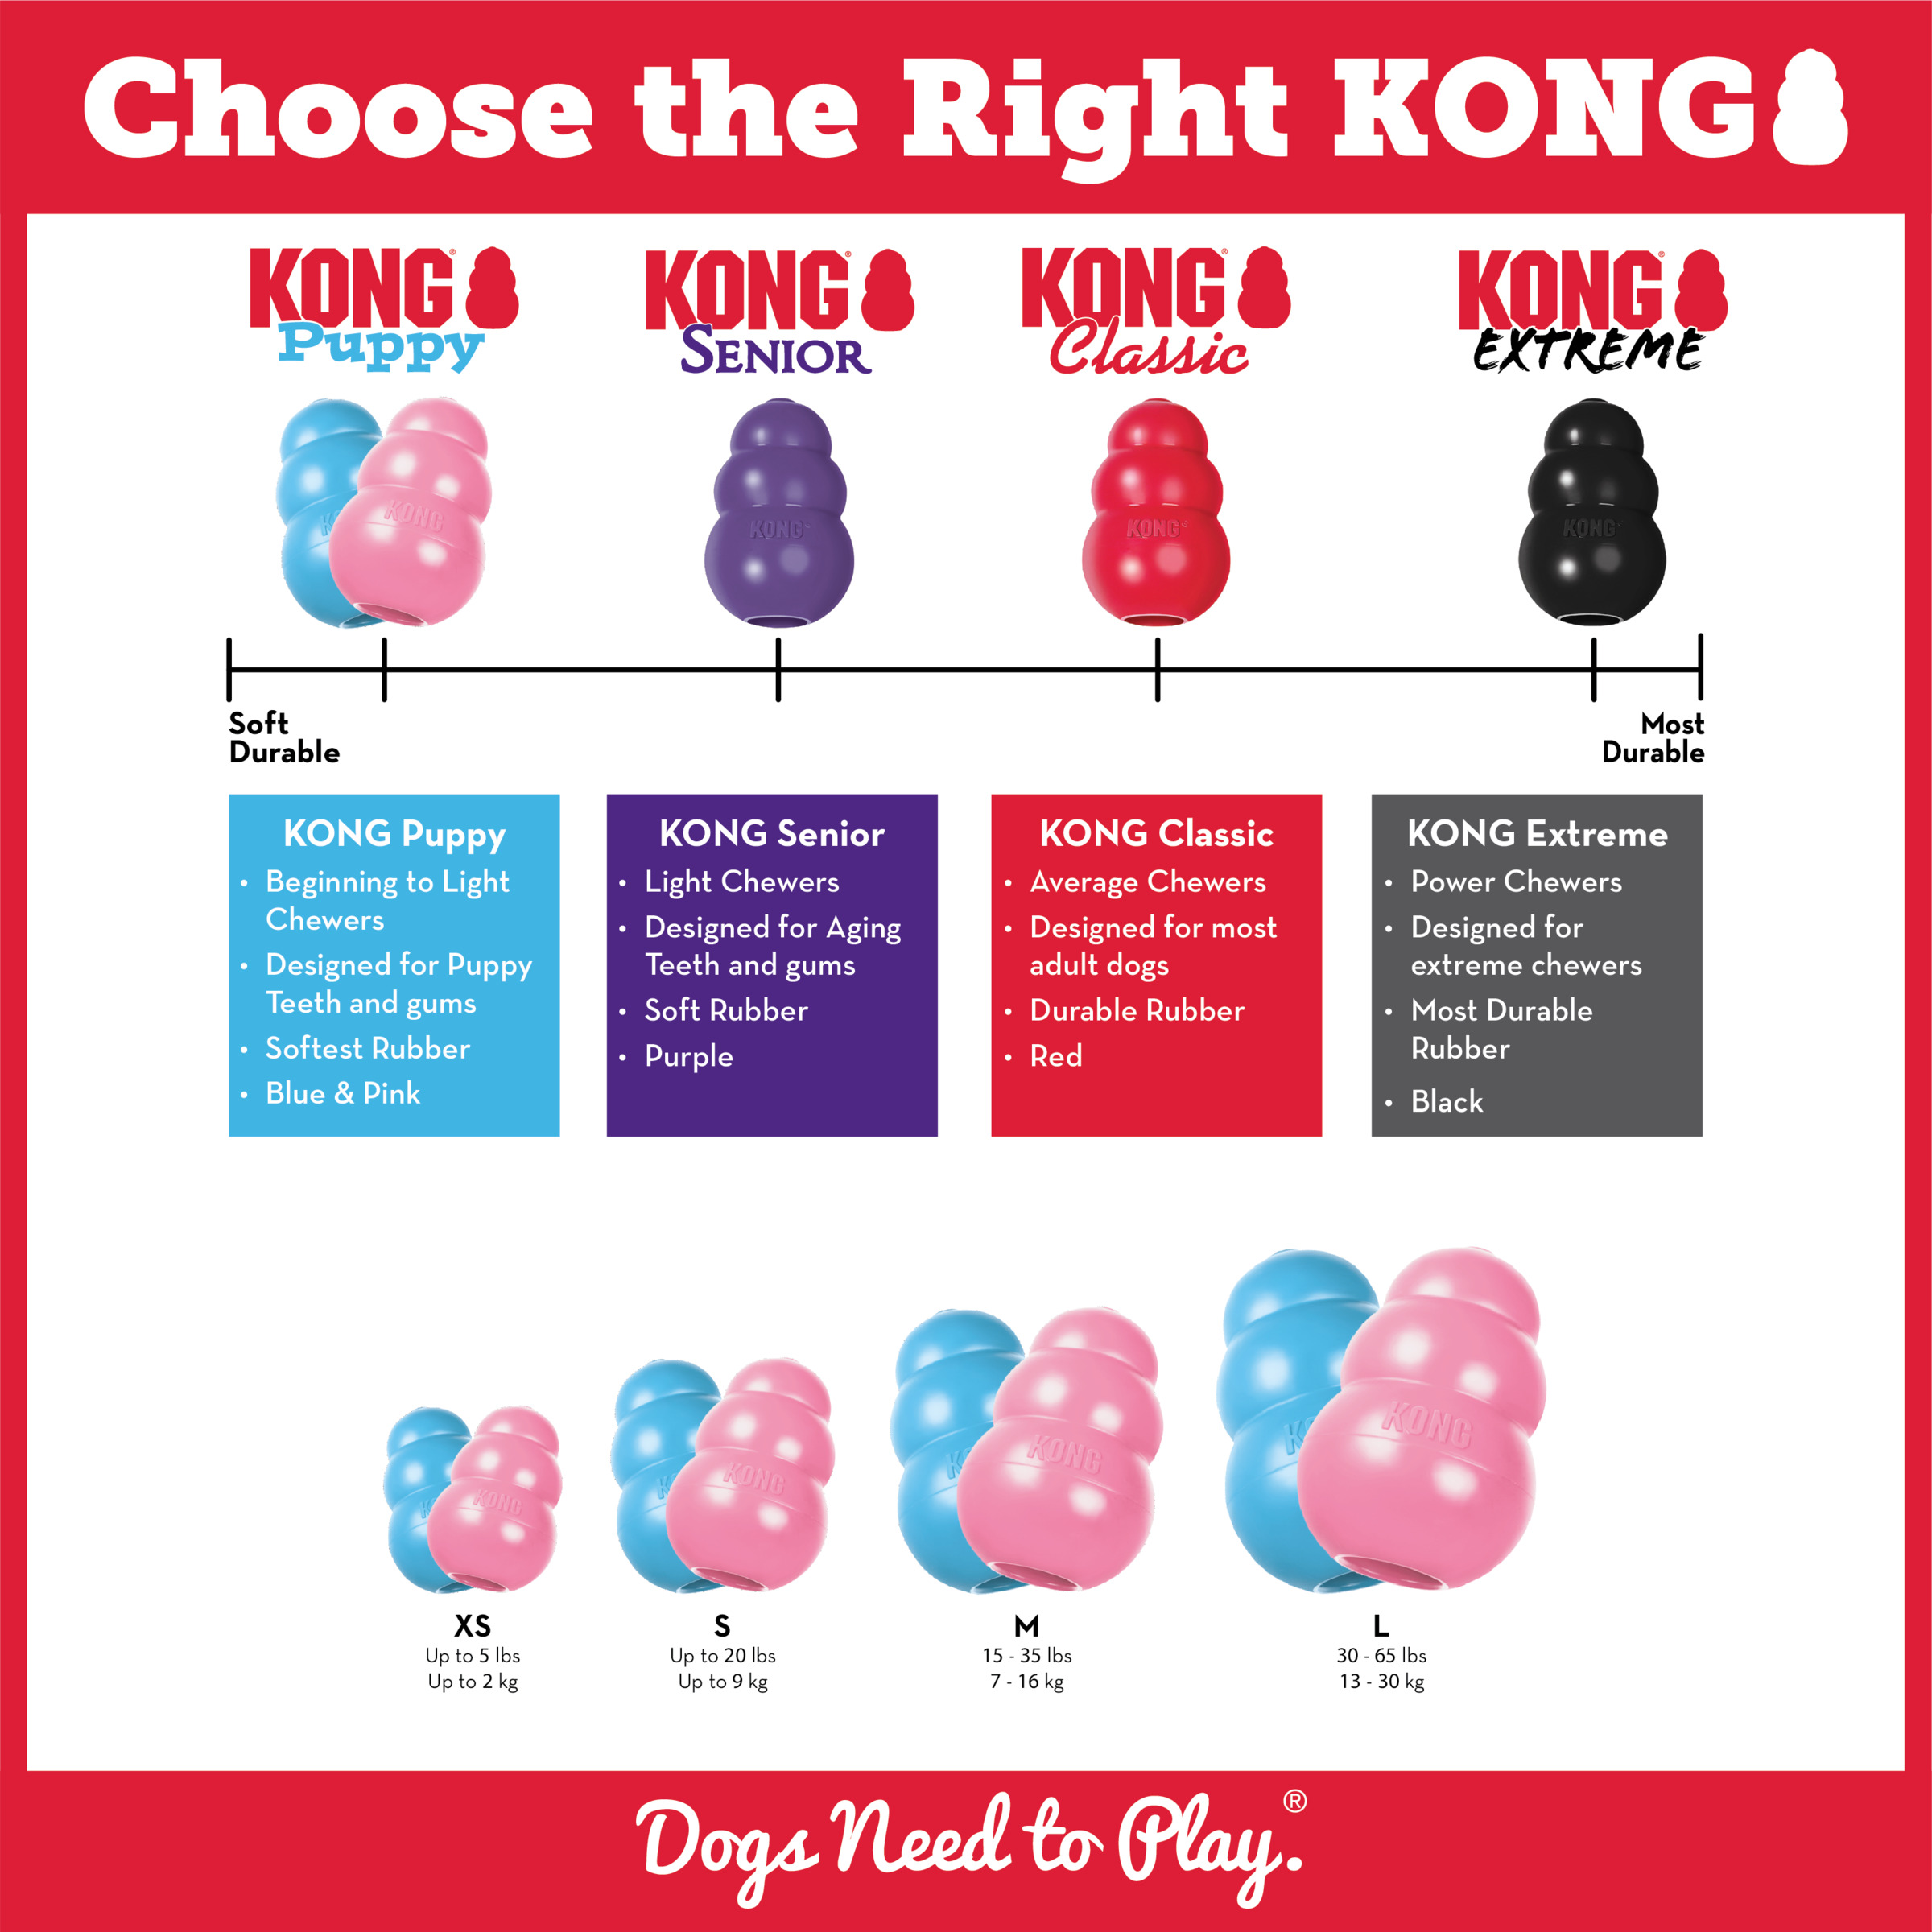 Imagen del producto KONG Puppy estilo de vida